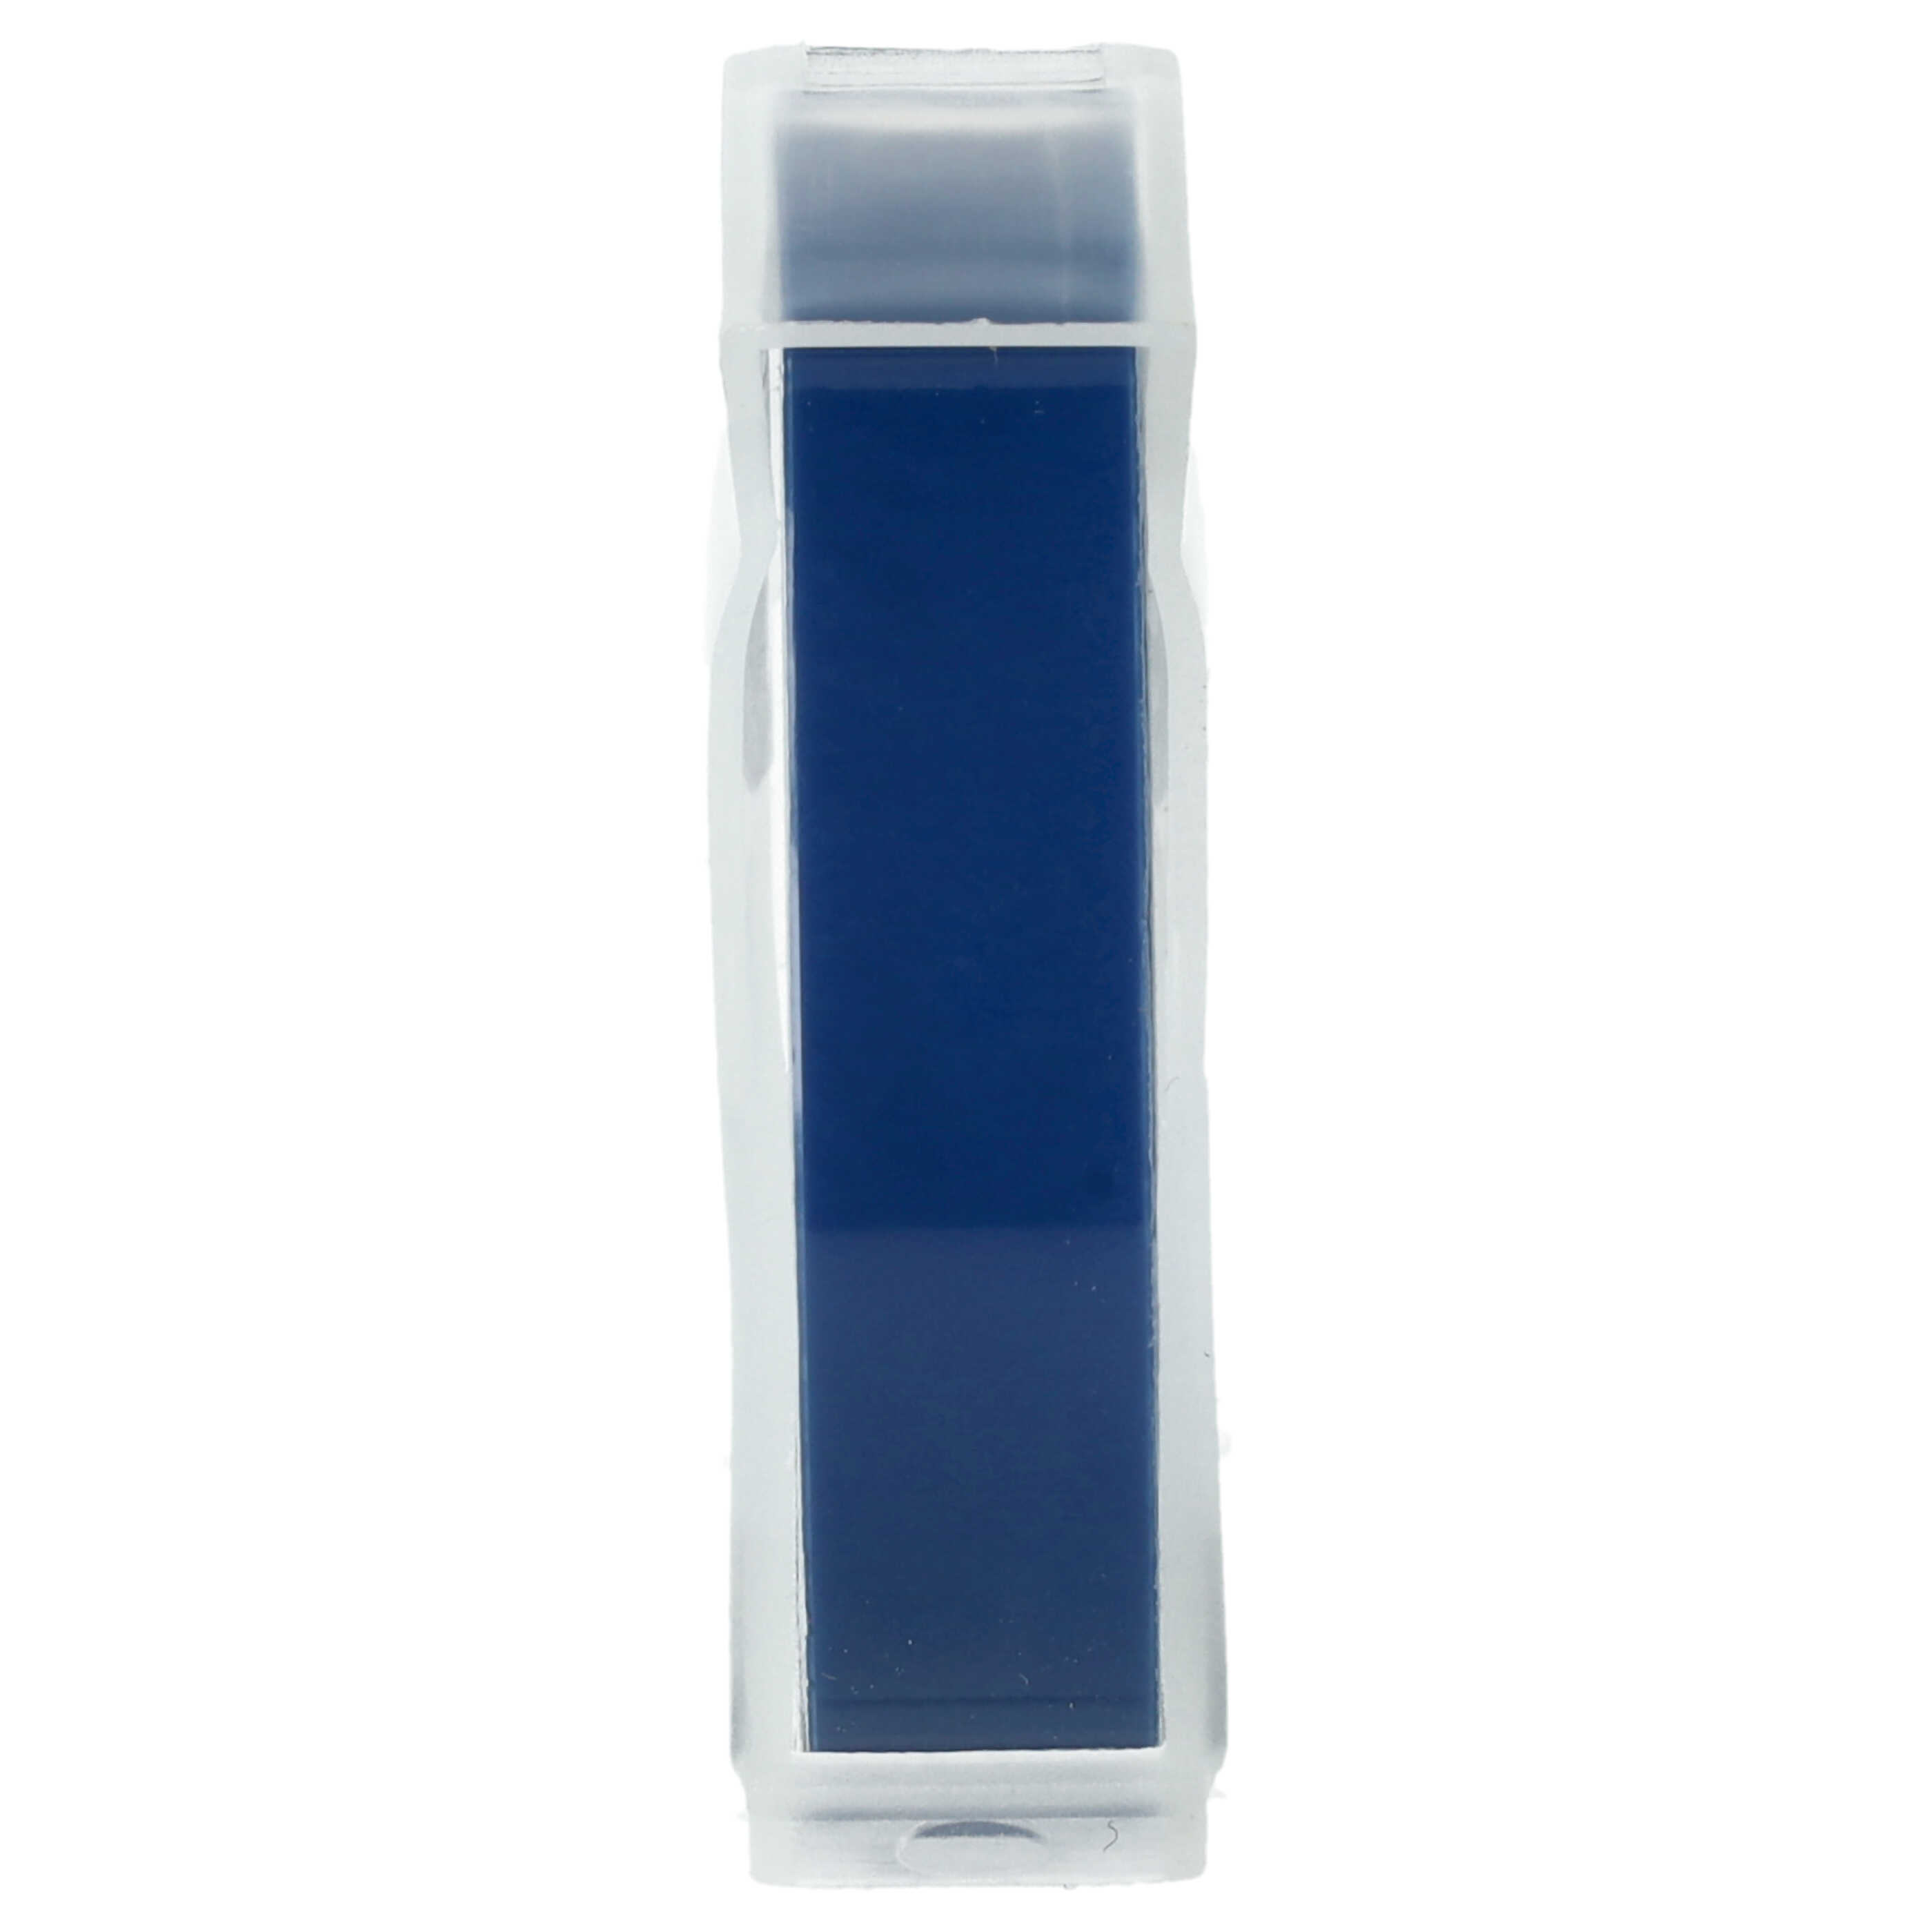 Casete cinta relieve 3D Casete cinta escritura reemplaza Dymo 520106, S0898140 Blanco su Azul